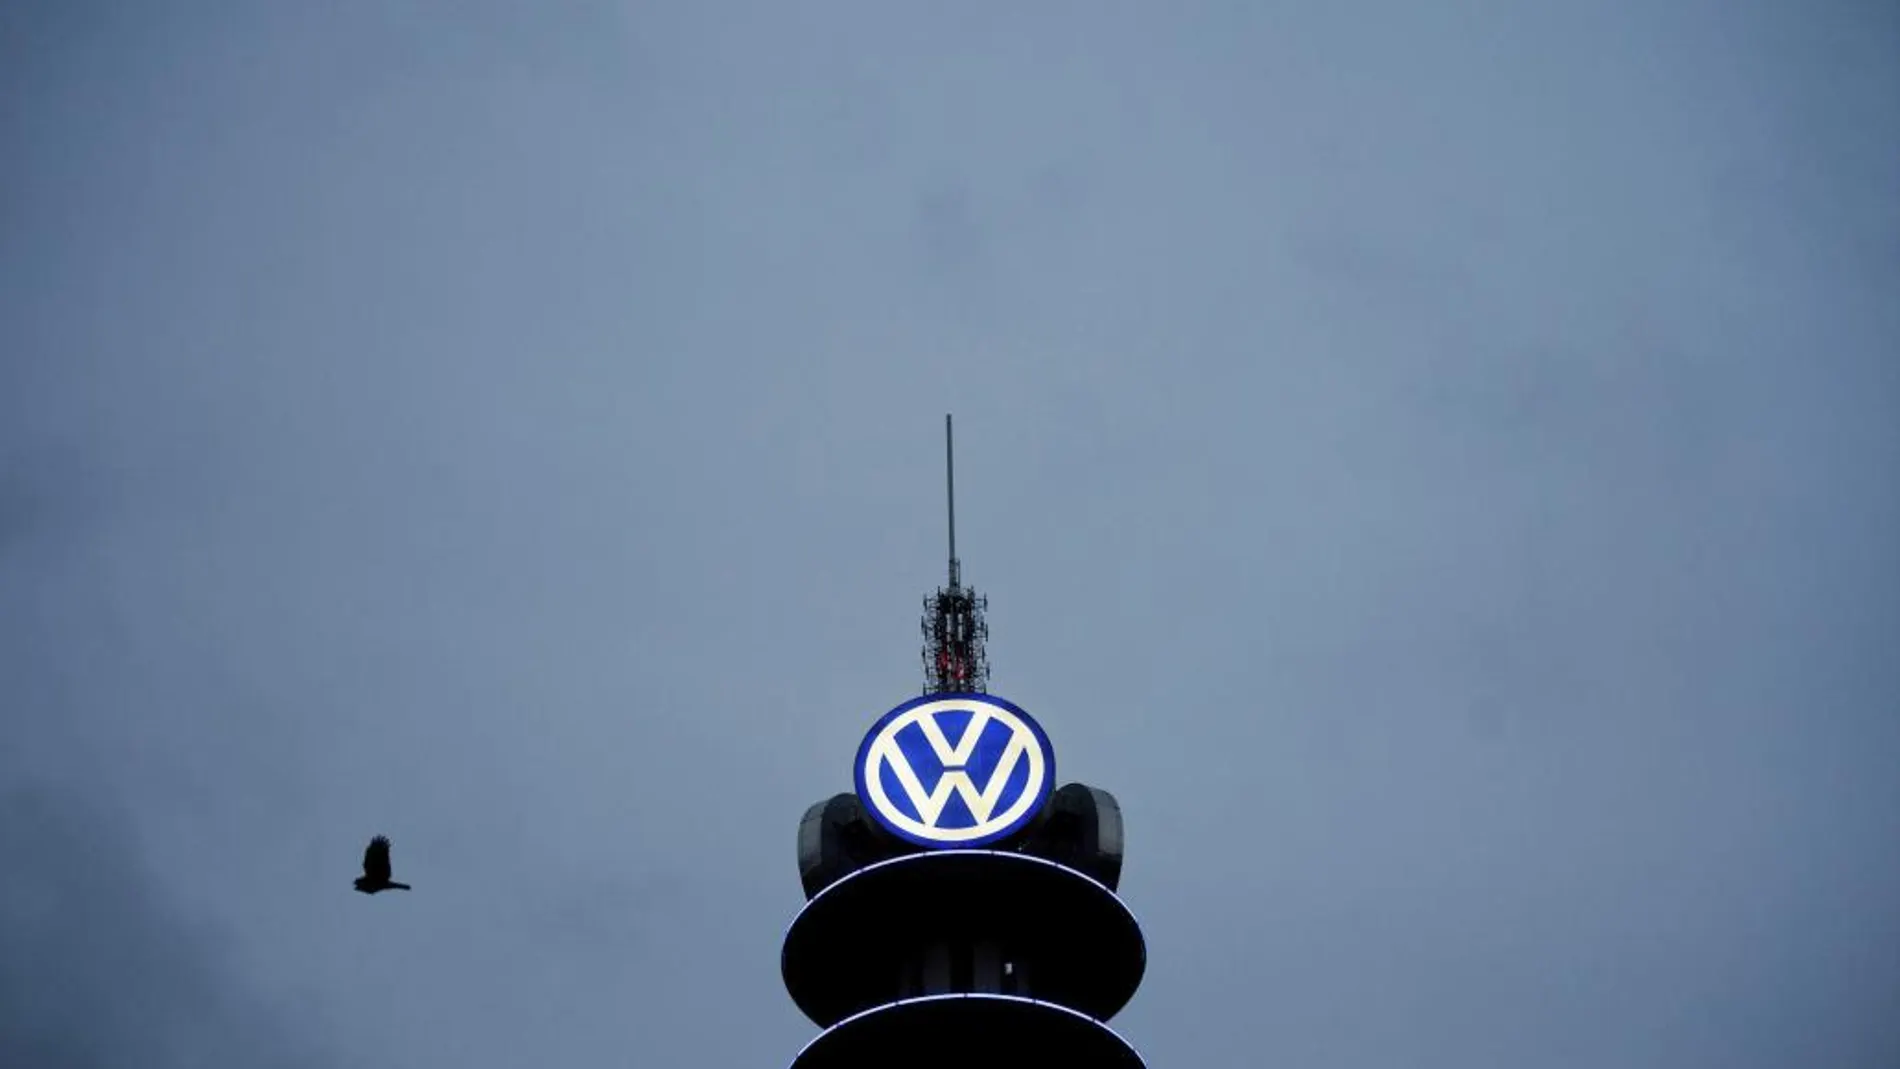 Logotipo del fabricante de automóviles alemán Volkswagen en la VW Tower de Hannover, Aleman